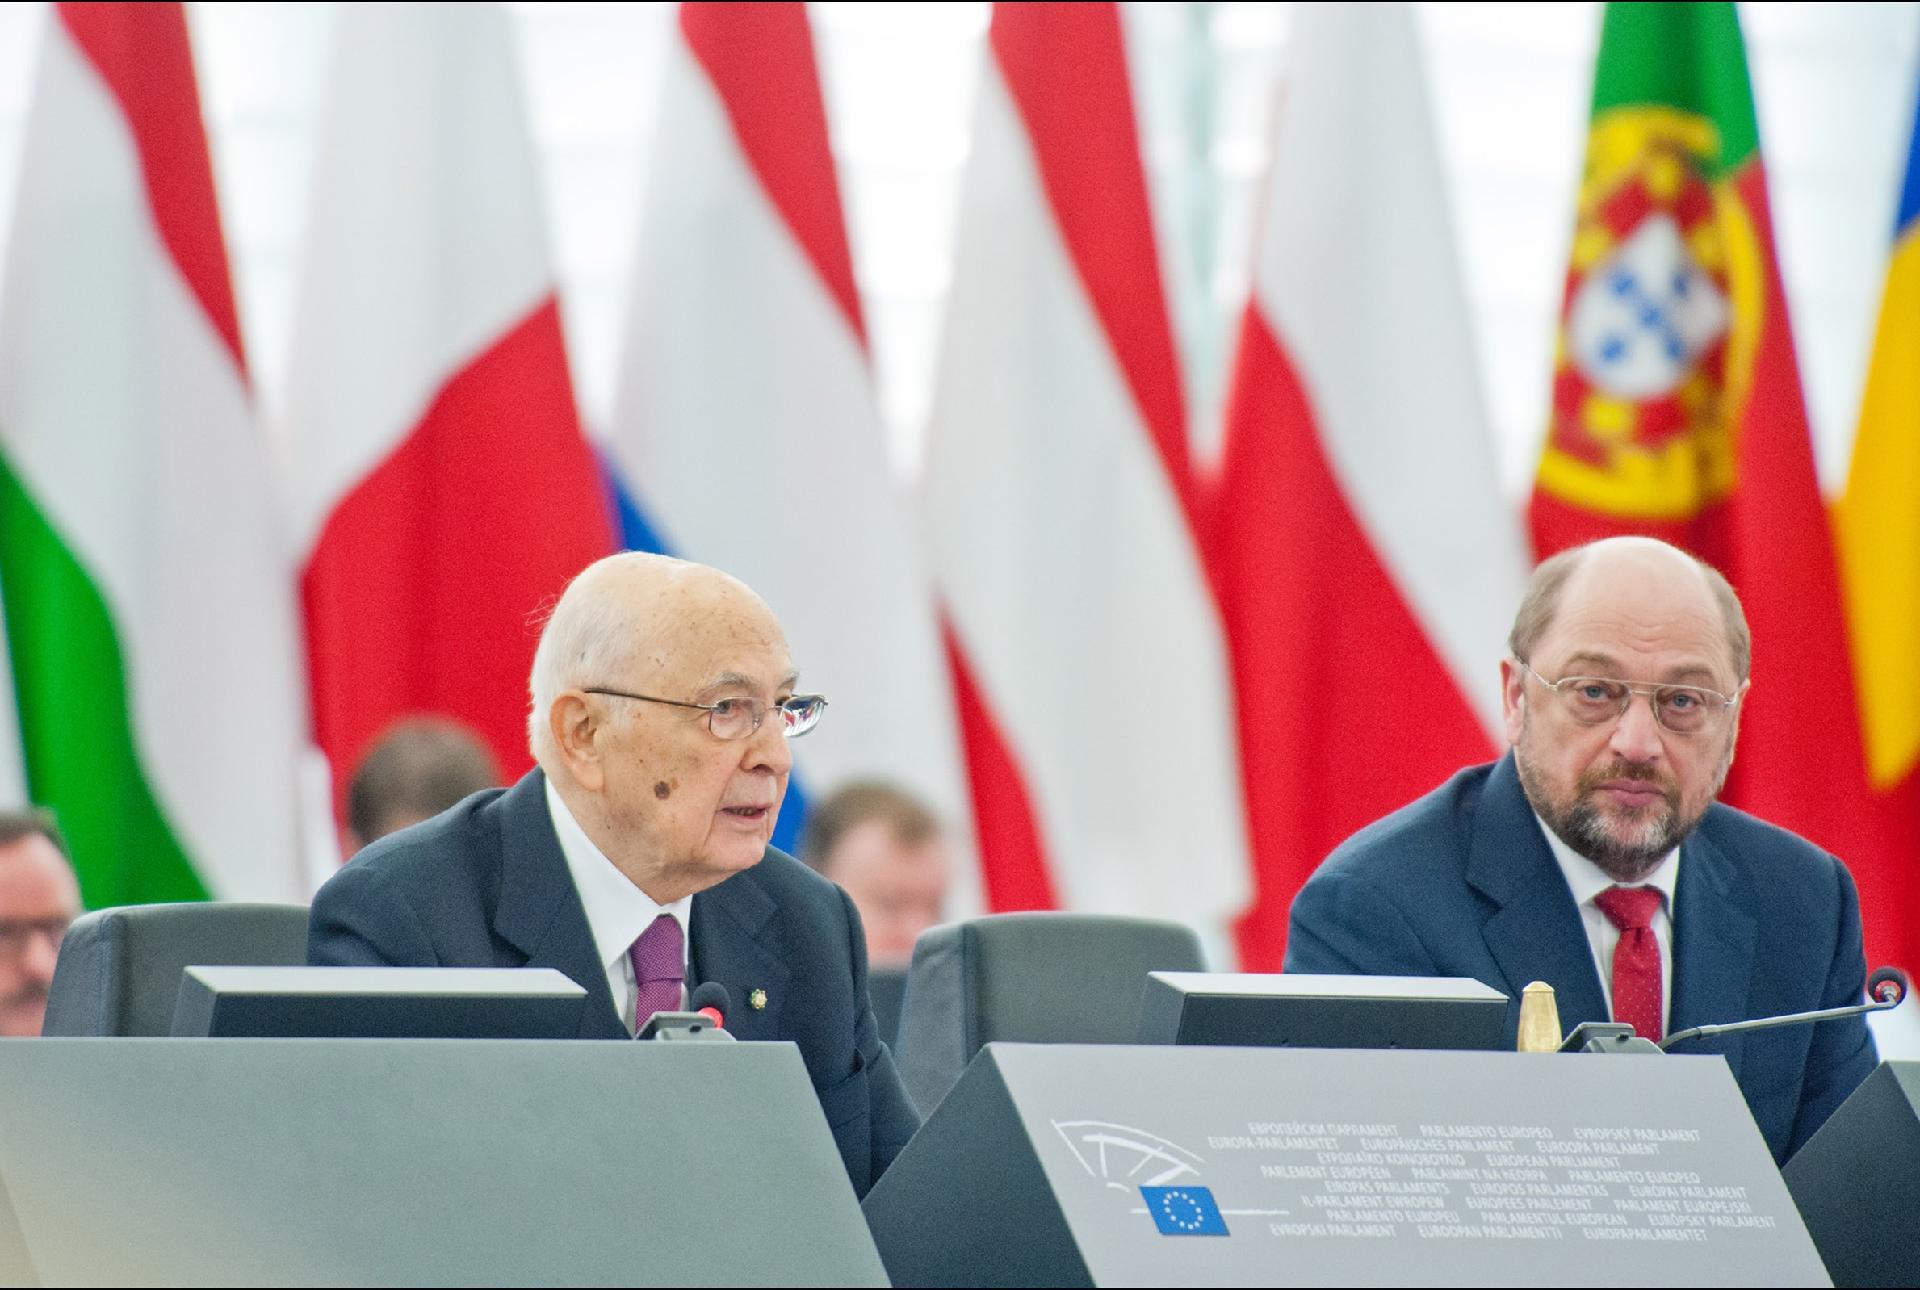 Il Presidente Giorgio Napolitano e il Presidente del Parlamento Europeo Martin Schulz nel corso della Plenaria